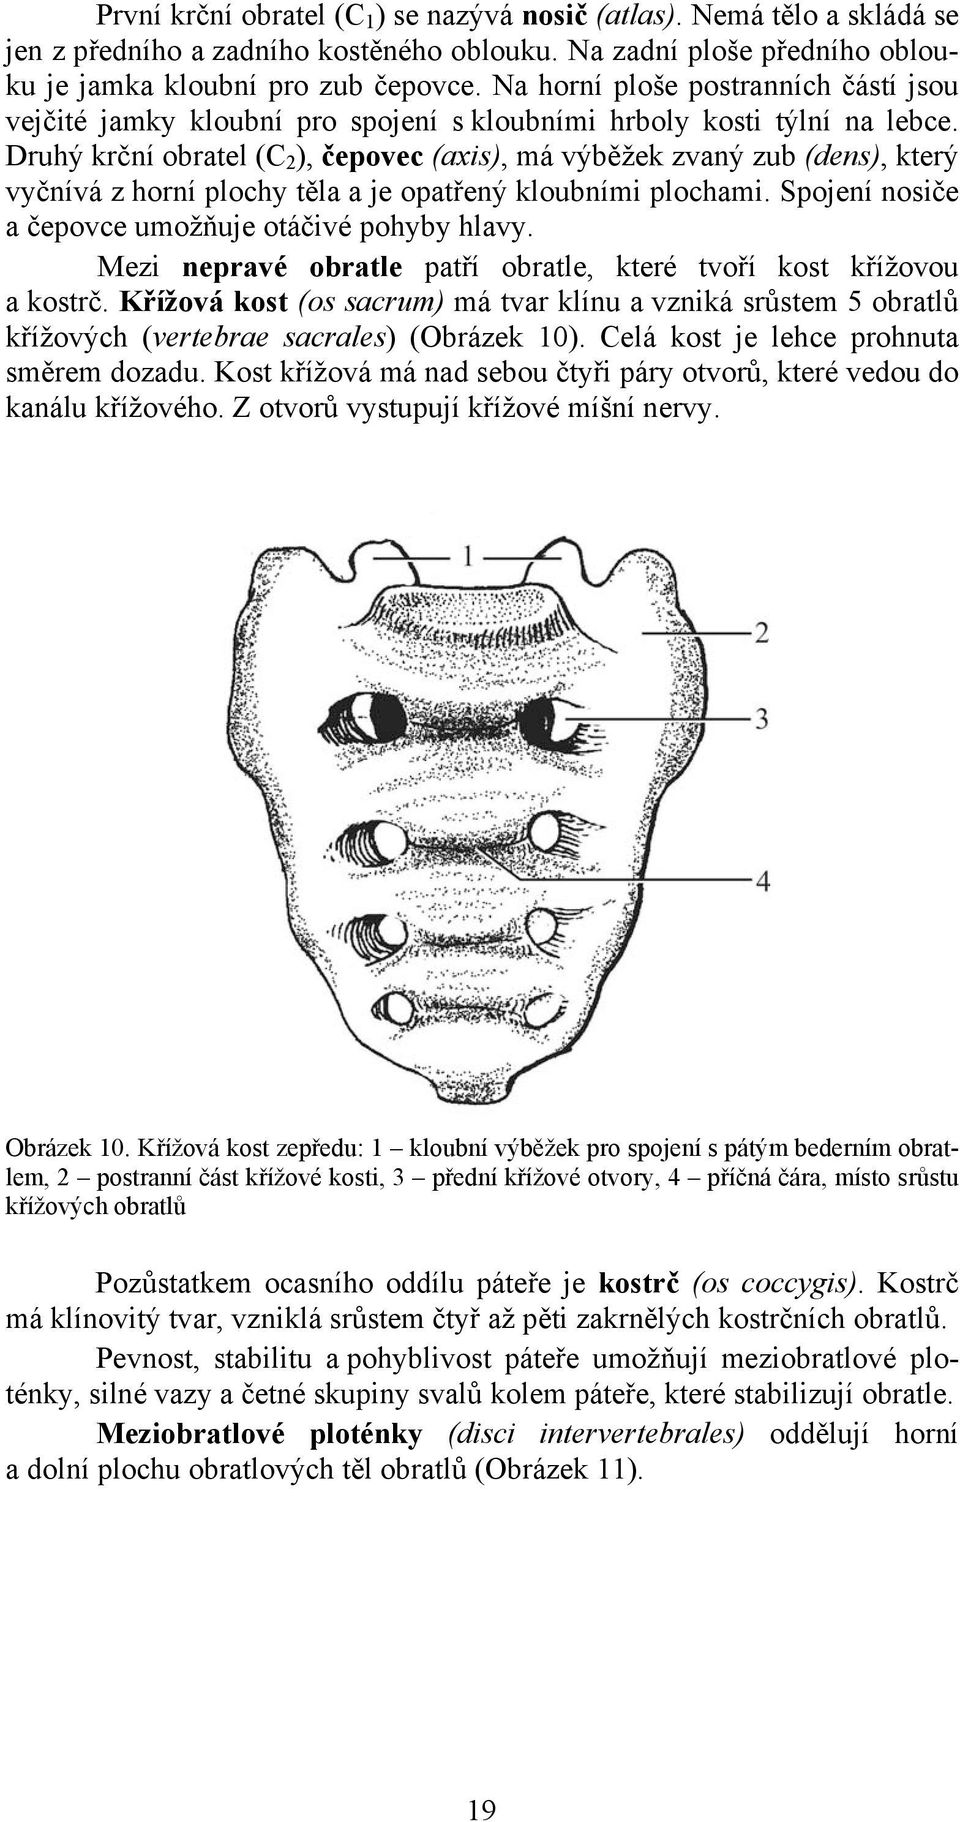 Anatomie 1 Podpůrně pohybový systém - PDF Free Download